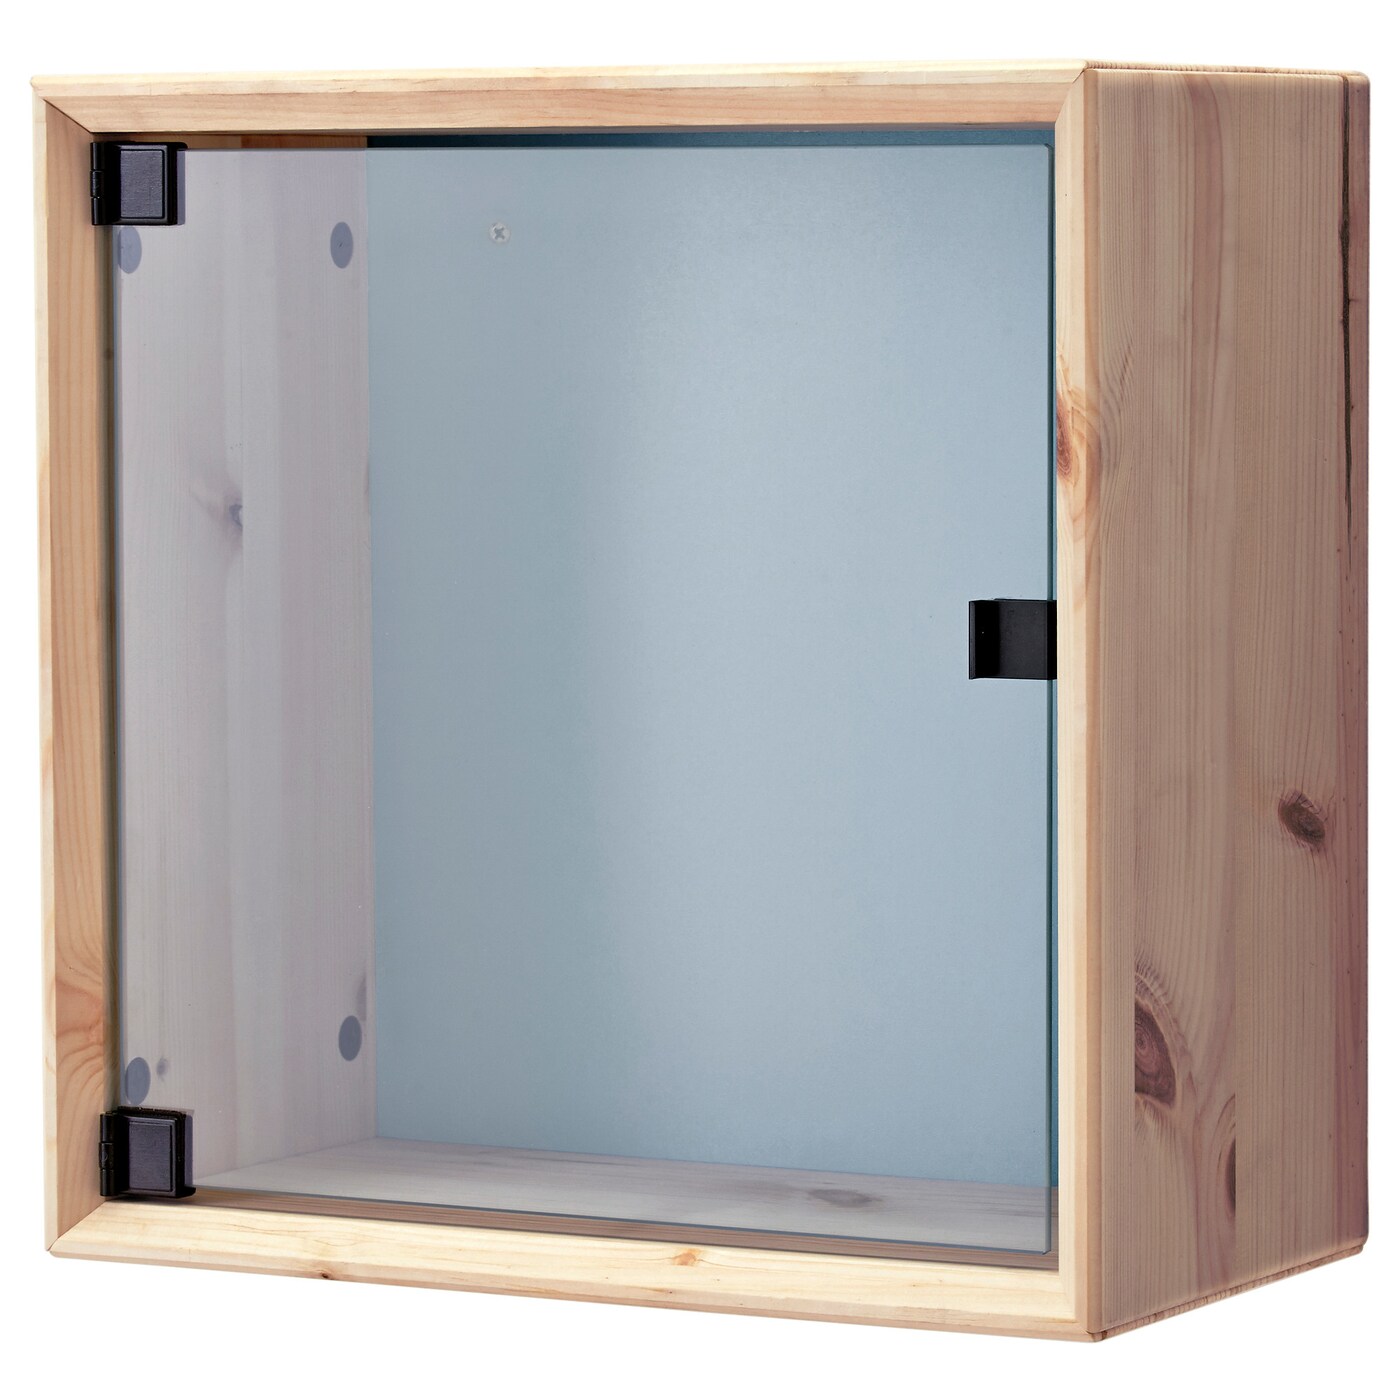 norn%C3%A4s-glass-door-wall-cabinet-pine-grey-blue__0276688_pe415375_s5.jpg